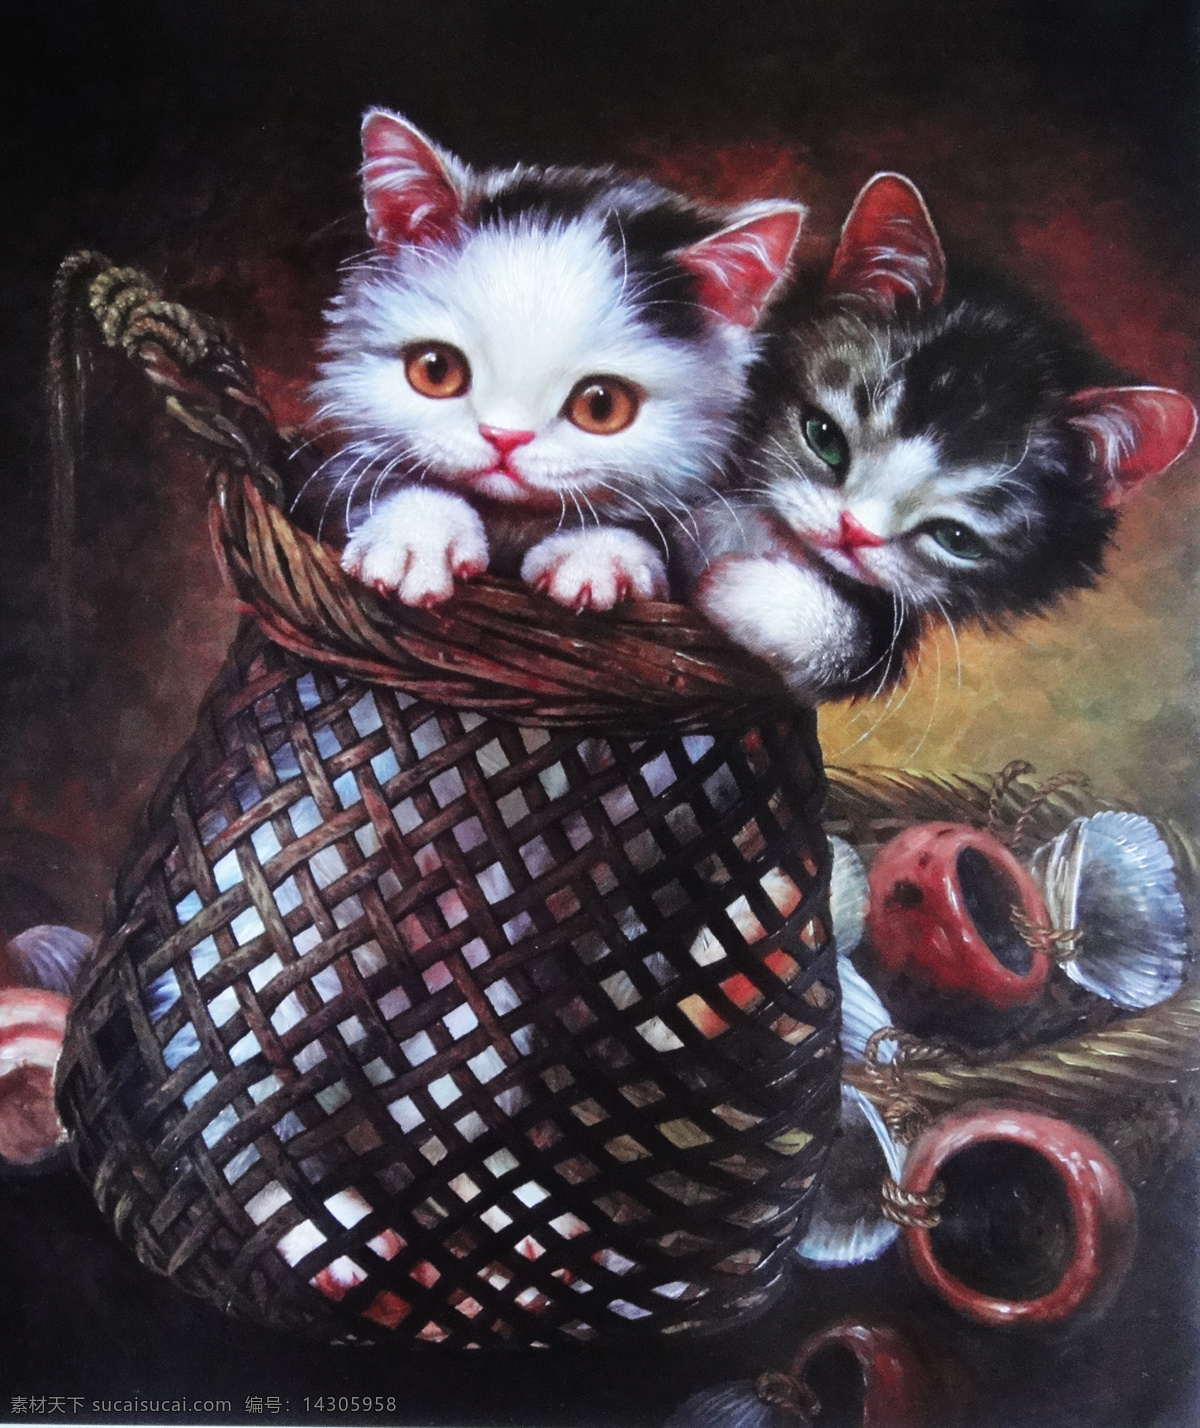 手绘 小猫 动物 油画 插画 装饰画 无框画 场景 彩绘 素描 卡通背景 抽象 艺术 书画文字 文化艺术